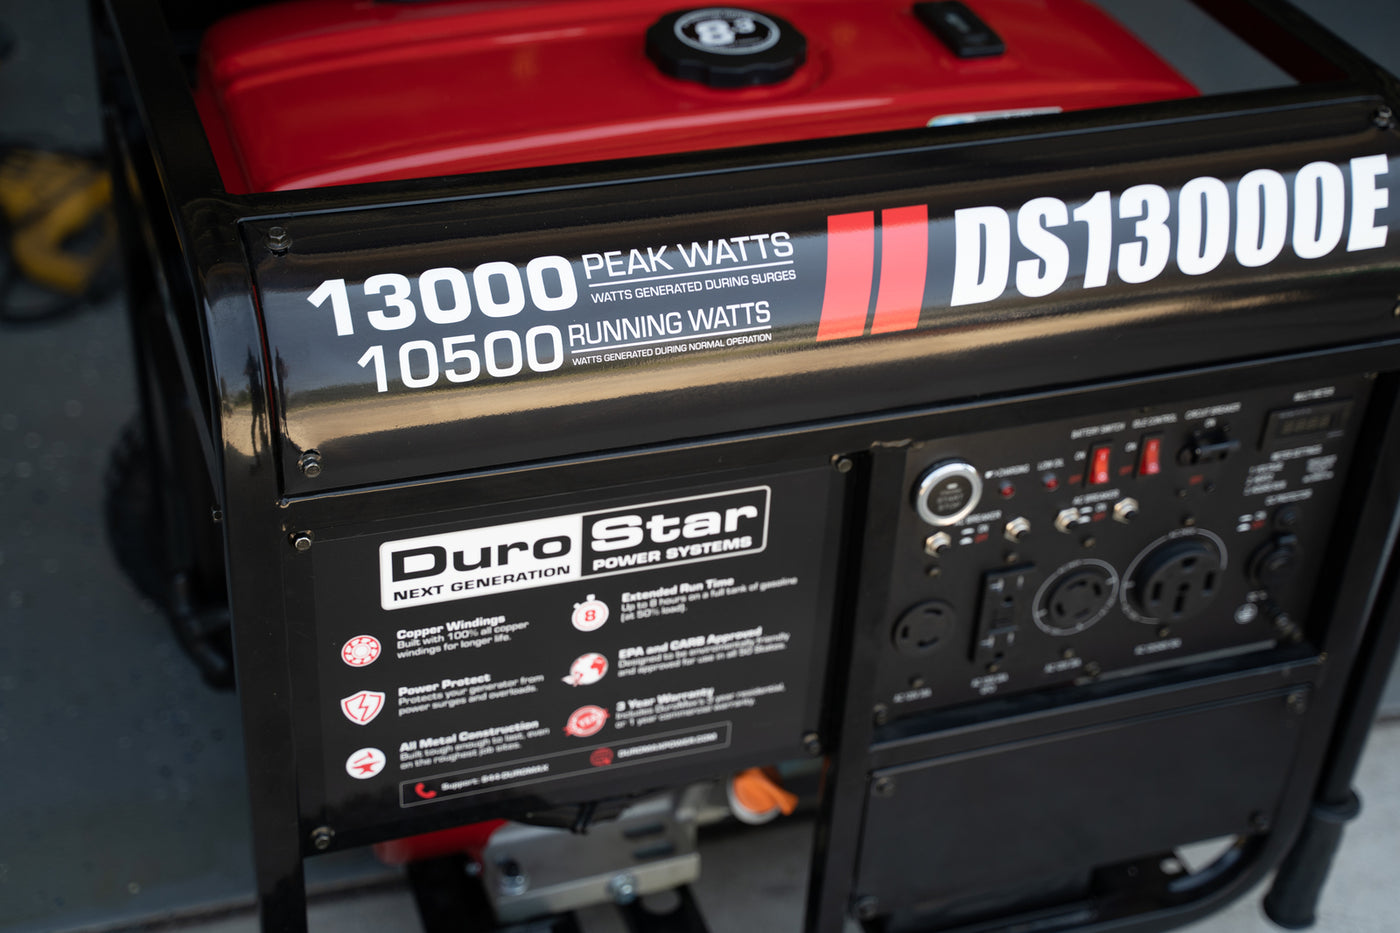 DuroStar  13,000 Watt Gasoline Portable Generator